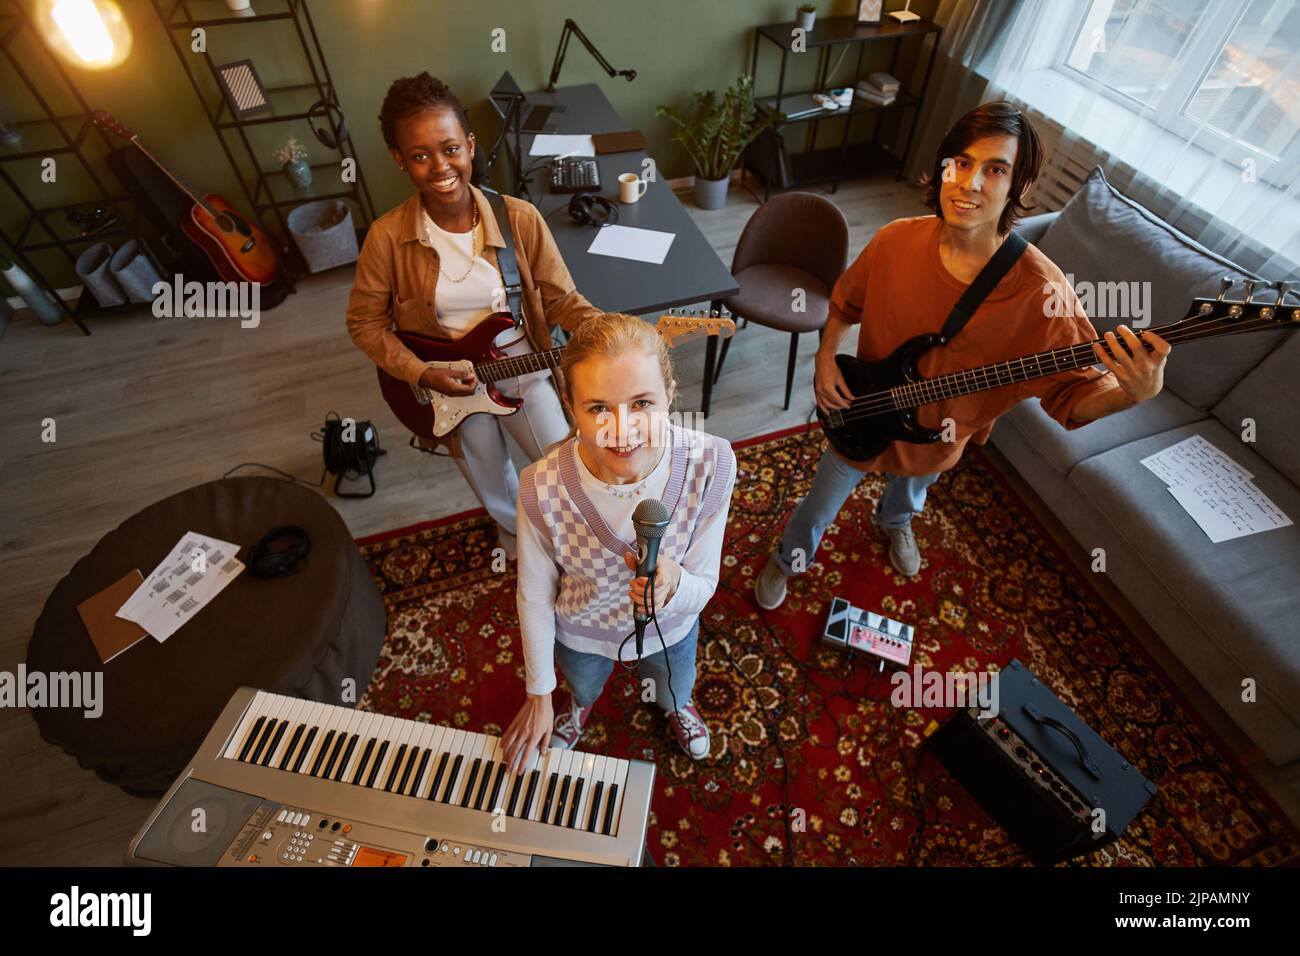 Retrato en ángulo alto de una banda de música que practica en un estudio en casa con enfoque en una joven rubia que sostiene el micrófono y mira hacia la cámara Foto de stock